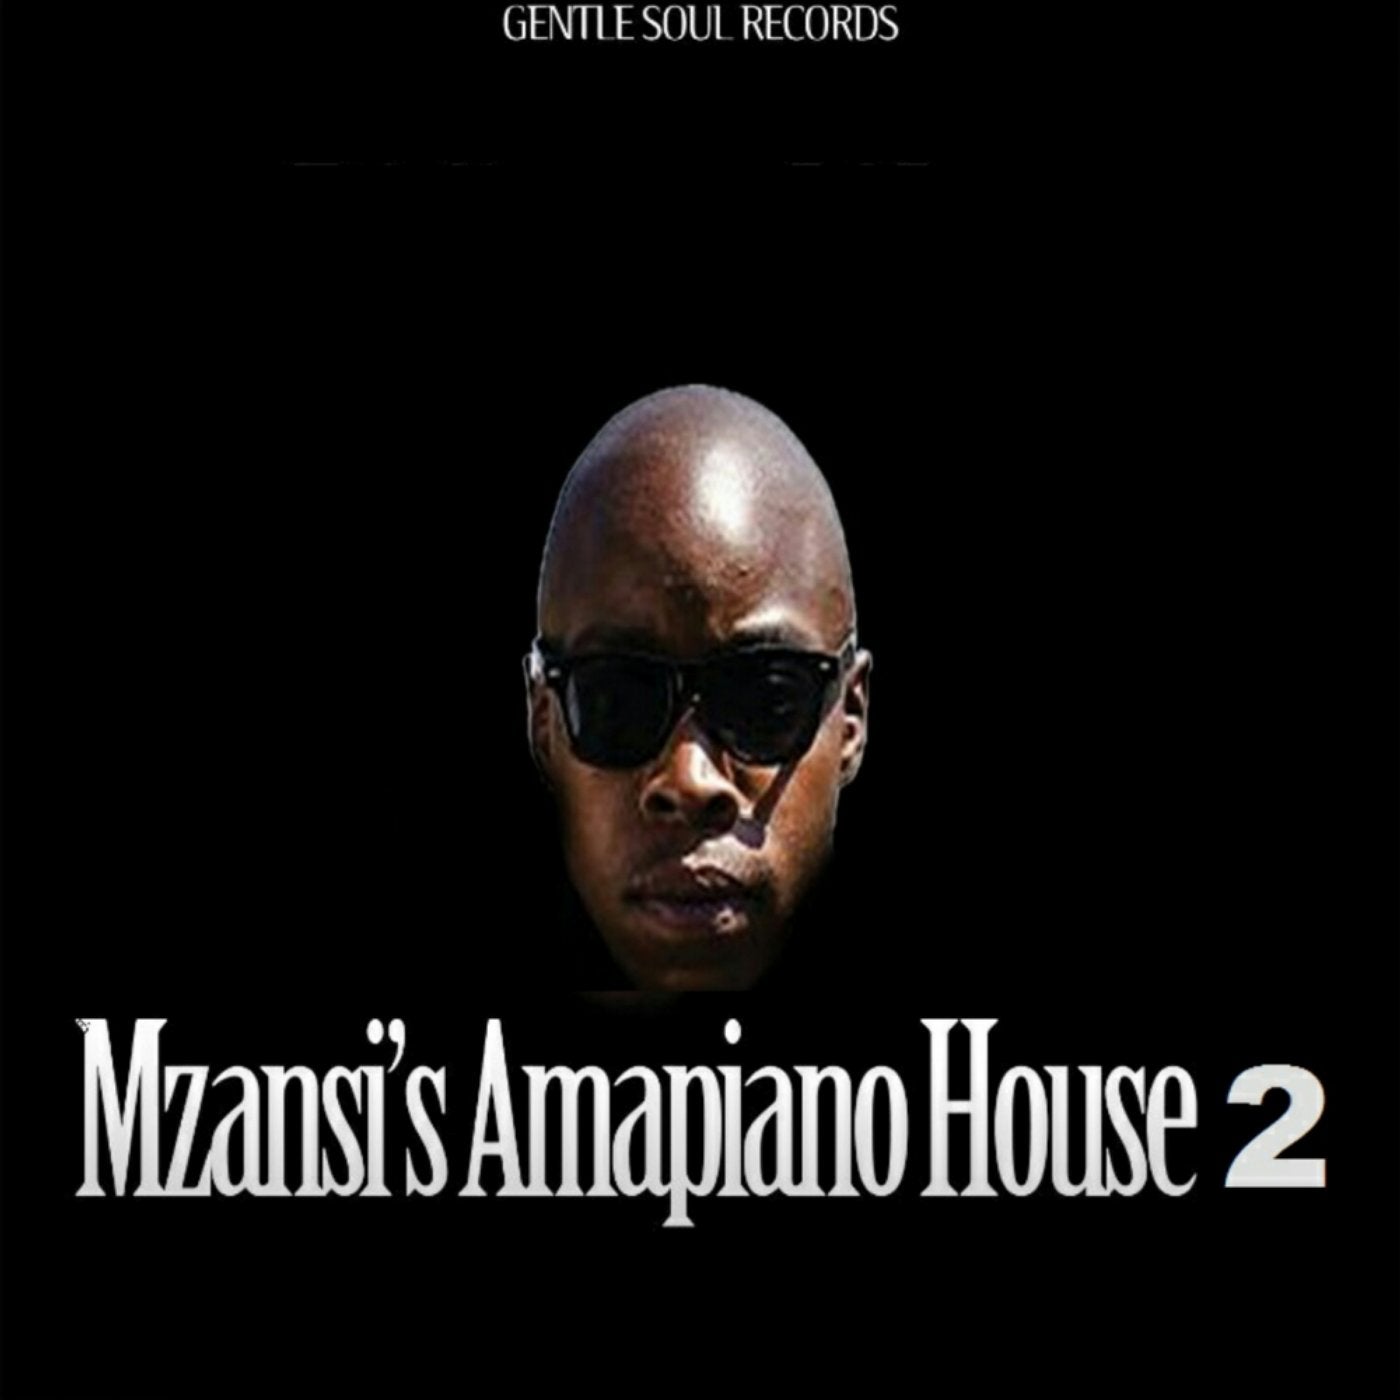 Mzansi's Amapiano House 2